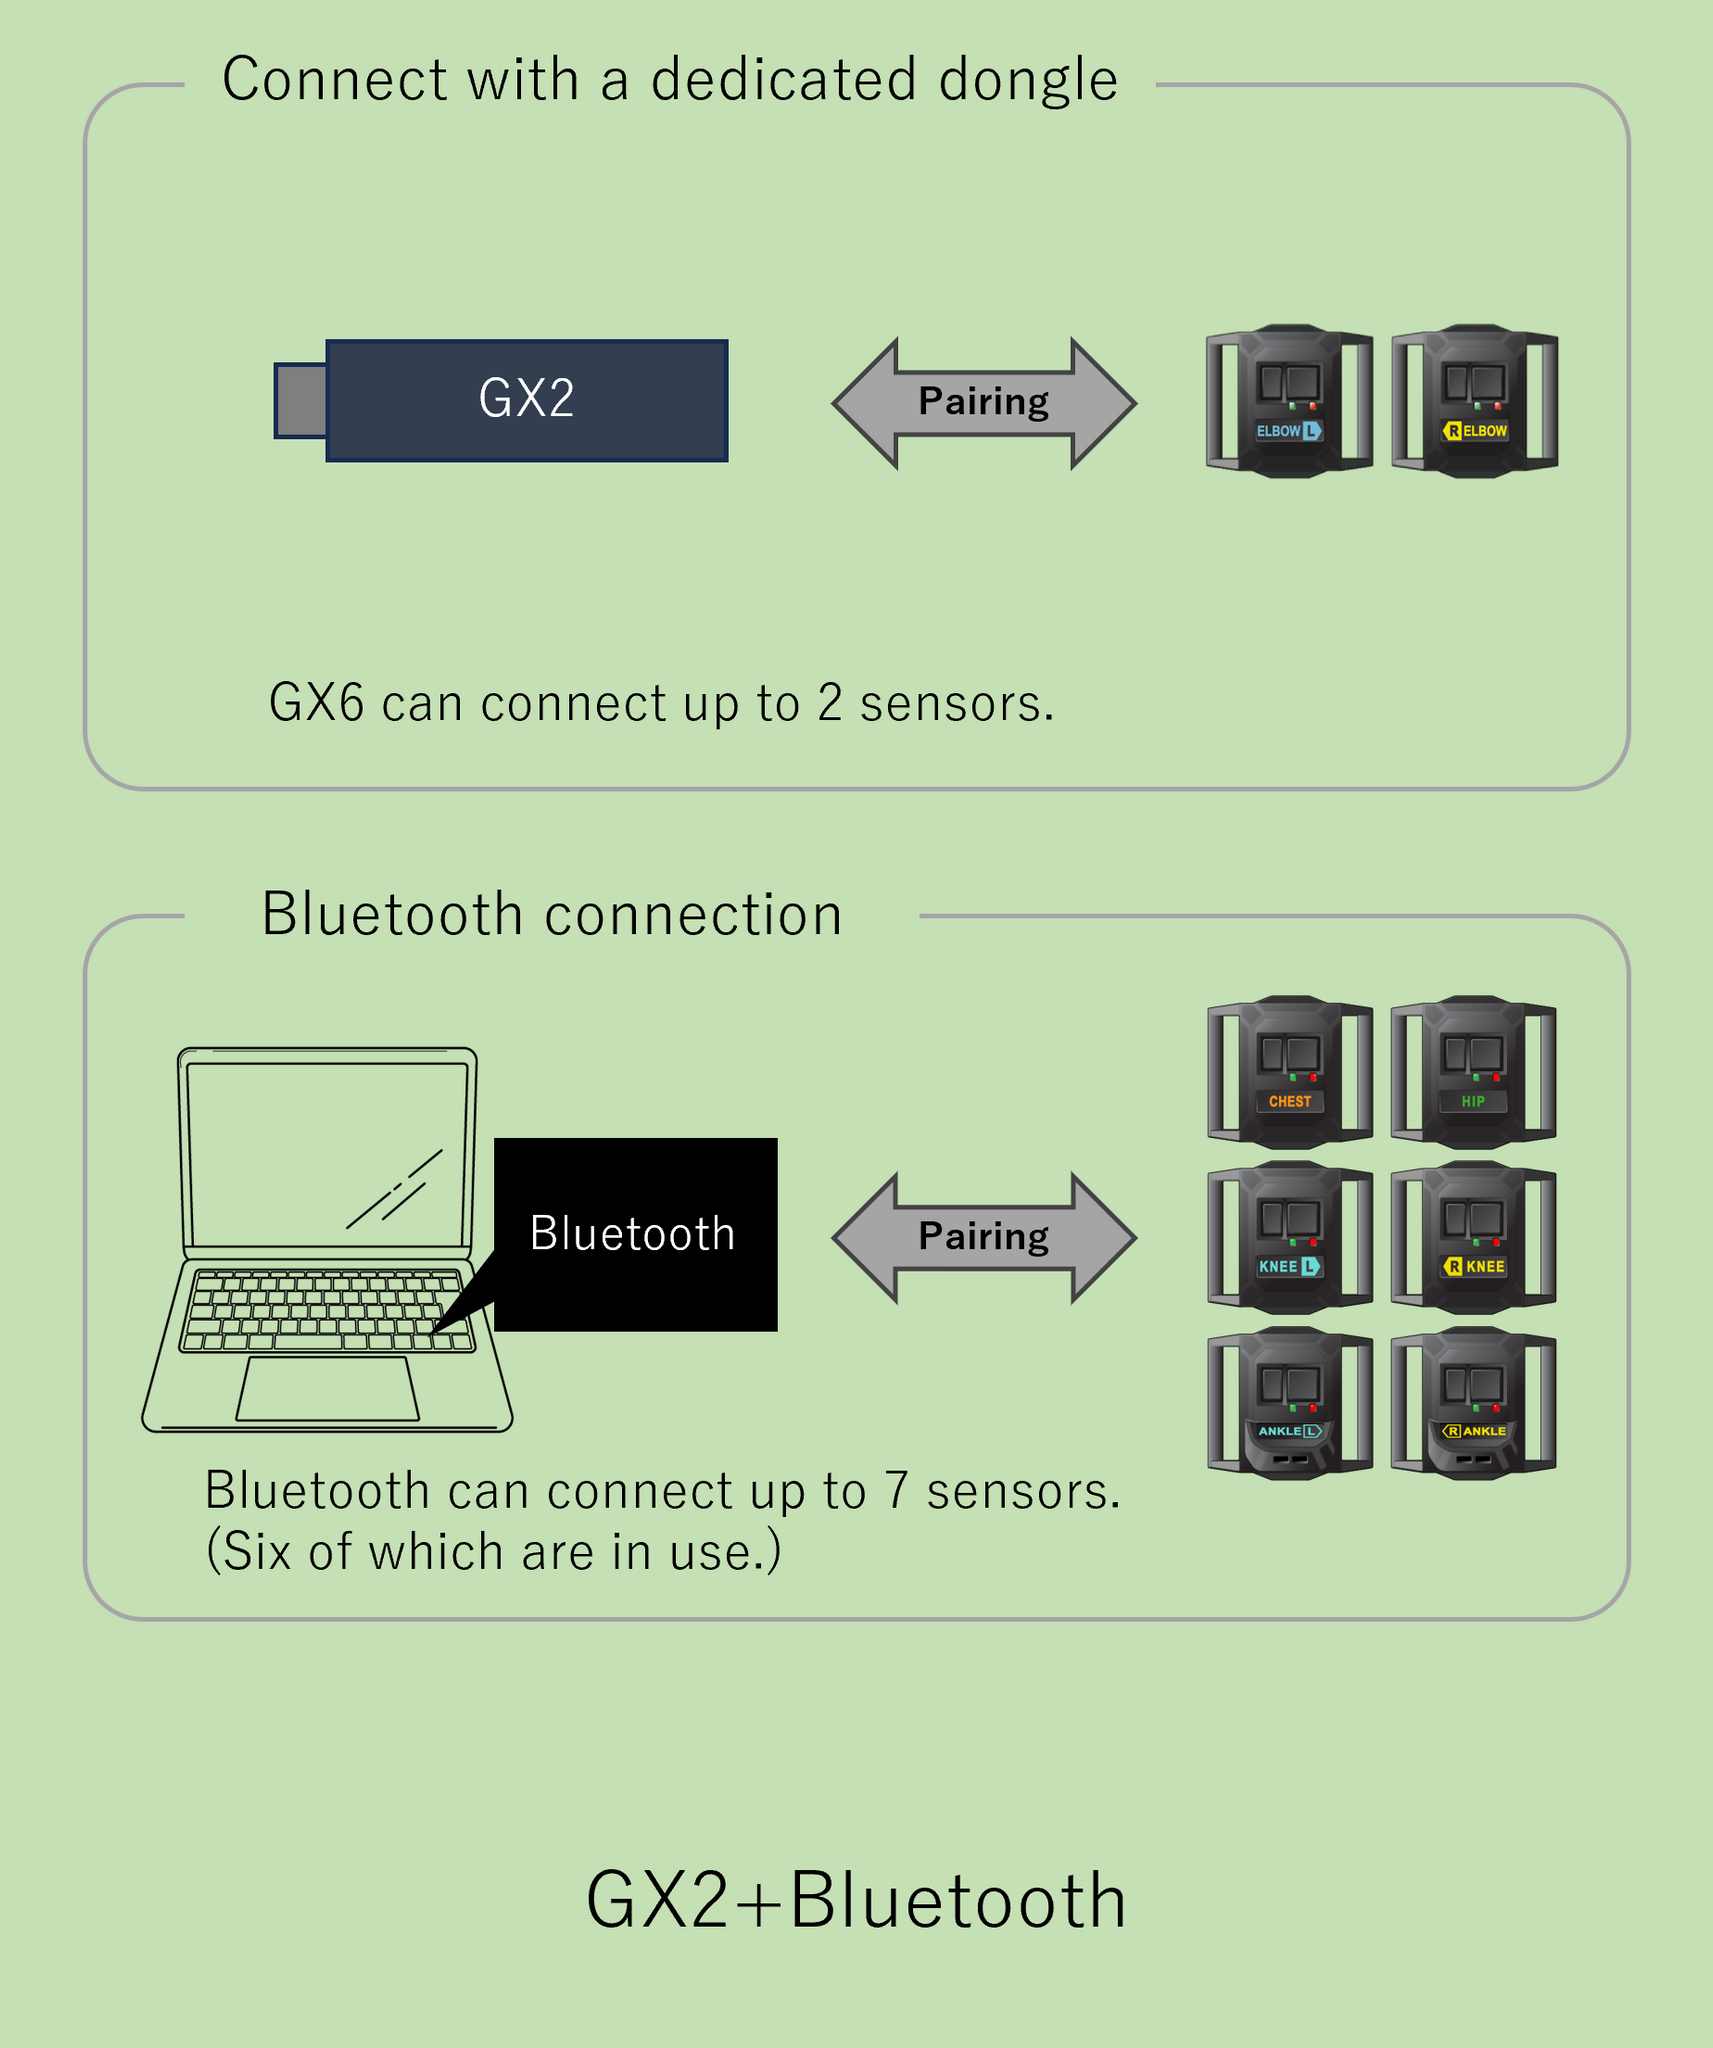 GX6 Communication Dongle for HaritoraX Wireless